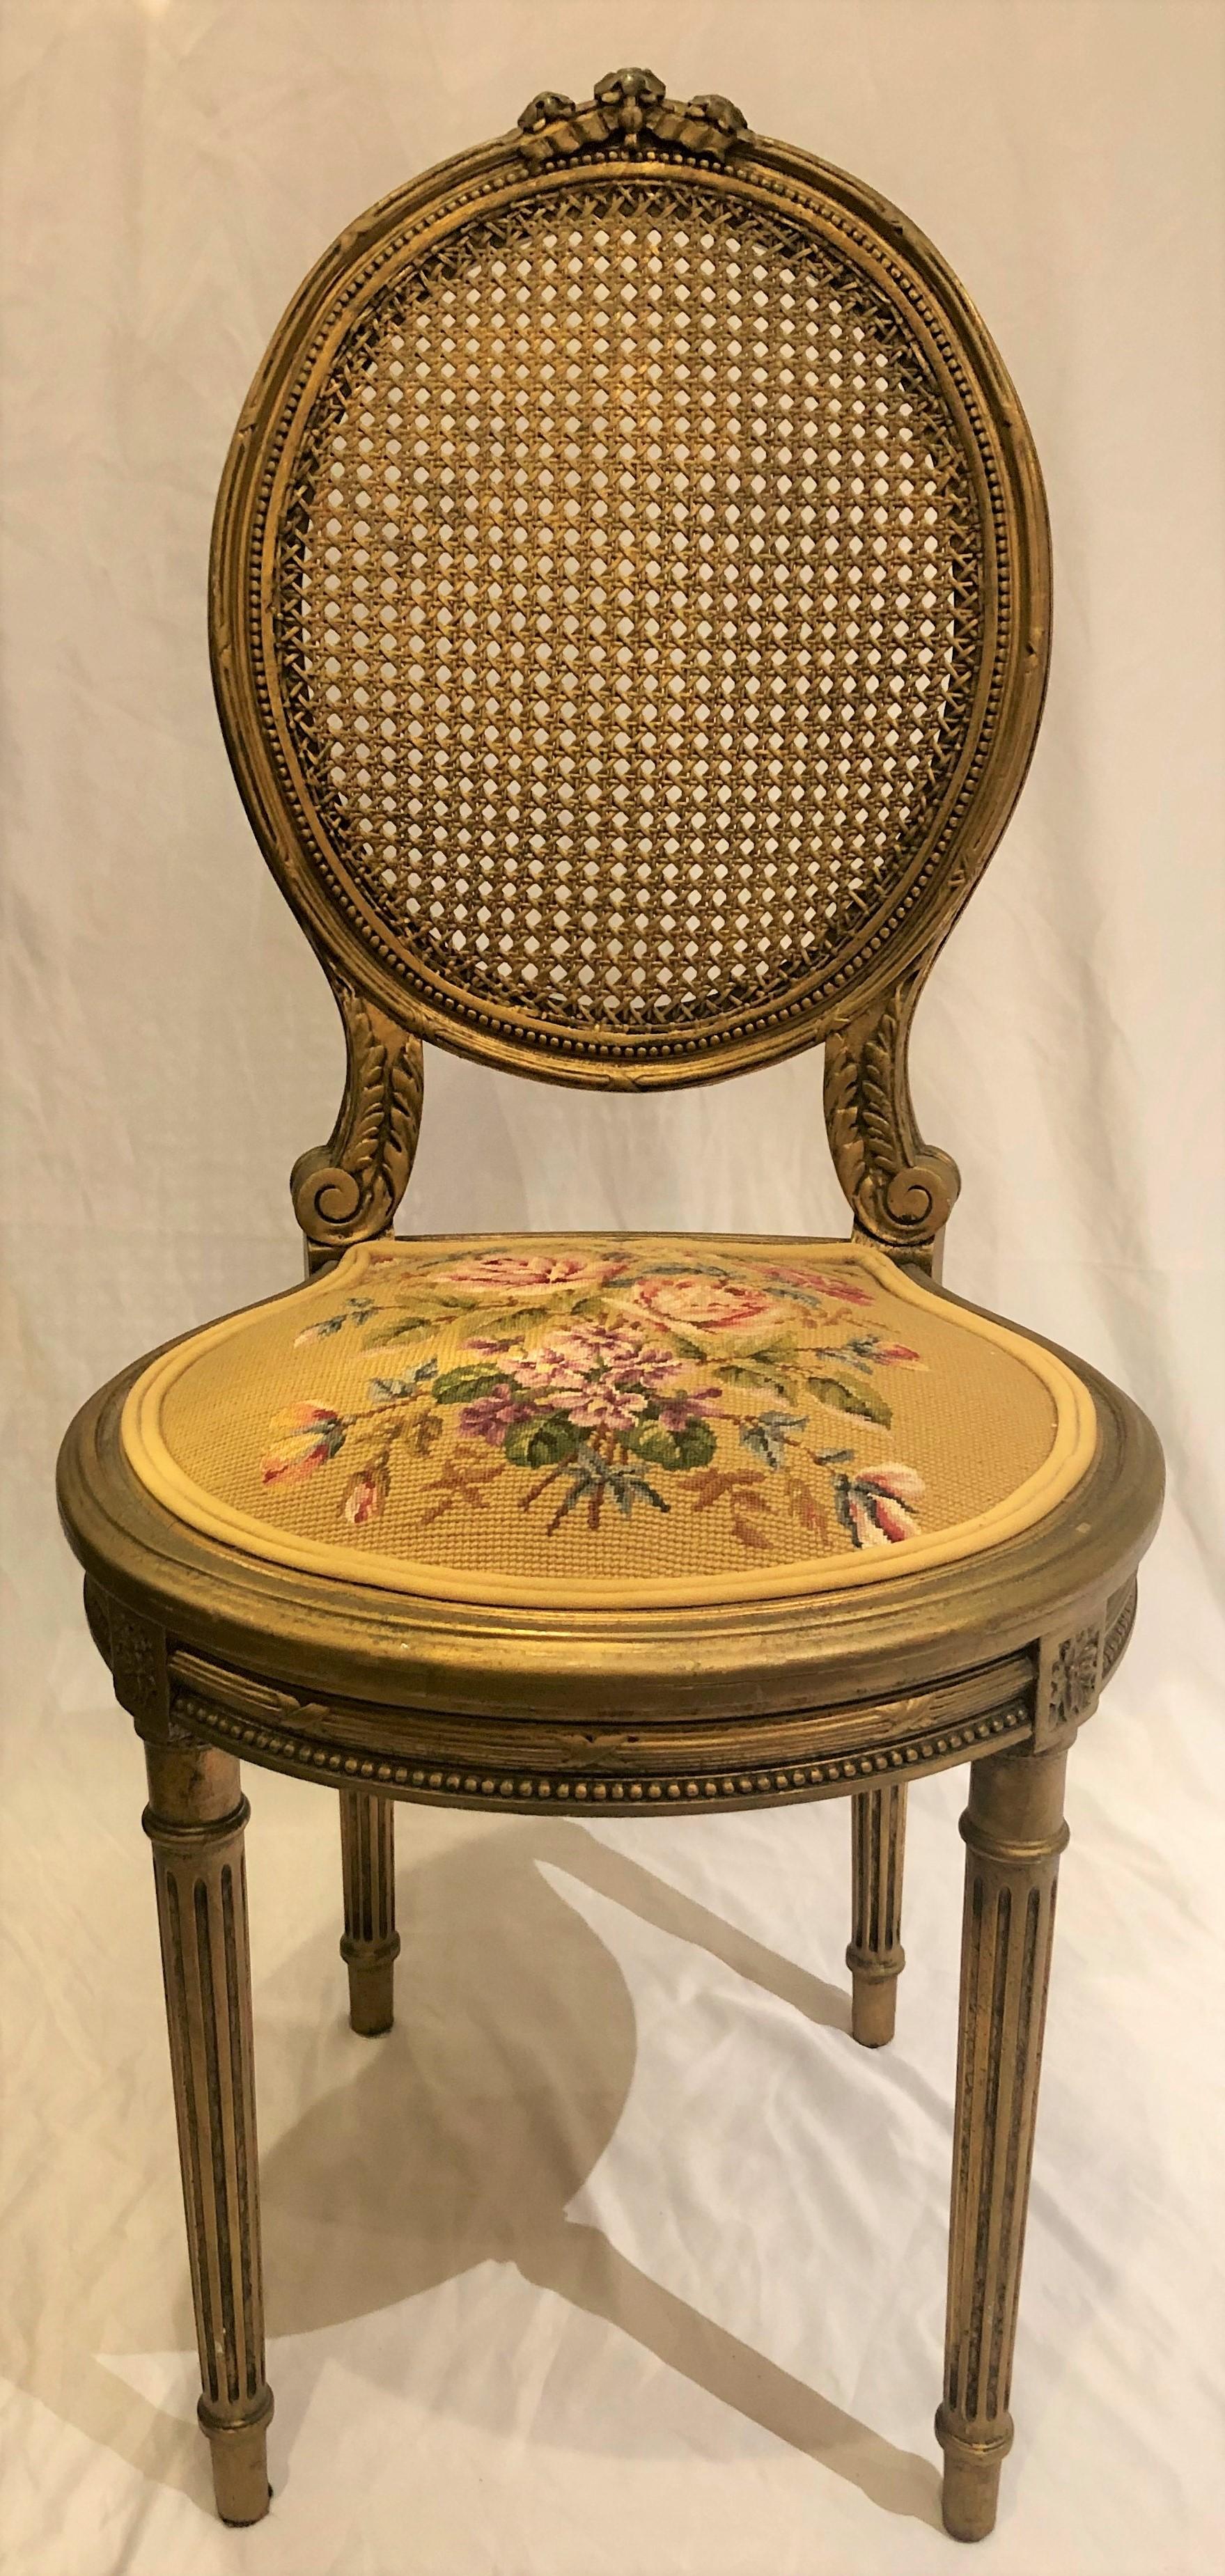 Chaise d'appoint ancienne en bois sculpté et doré, vers 1870-1880
FOC061.